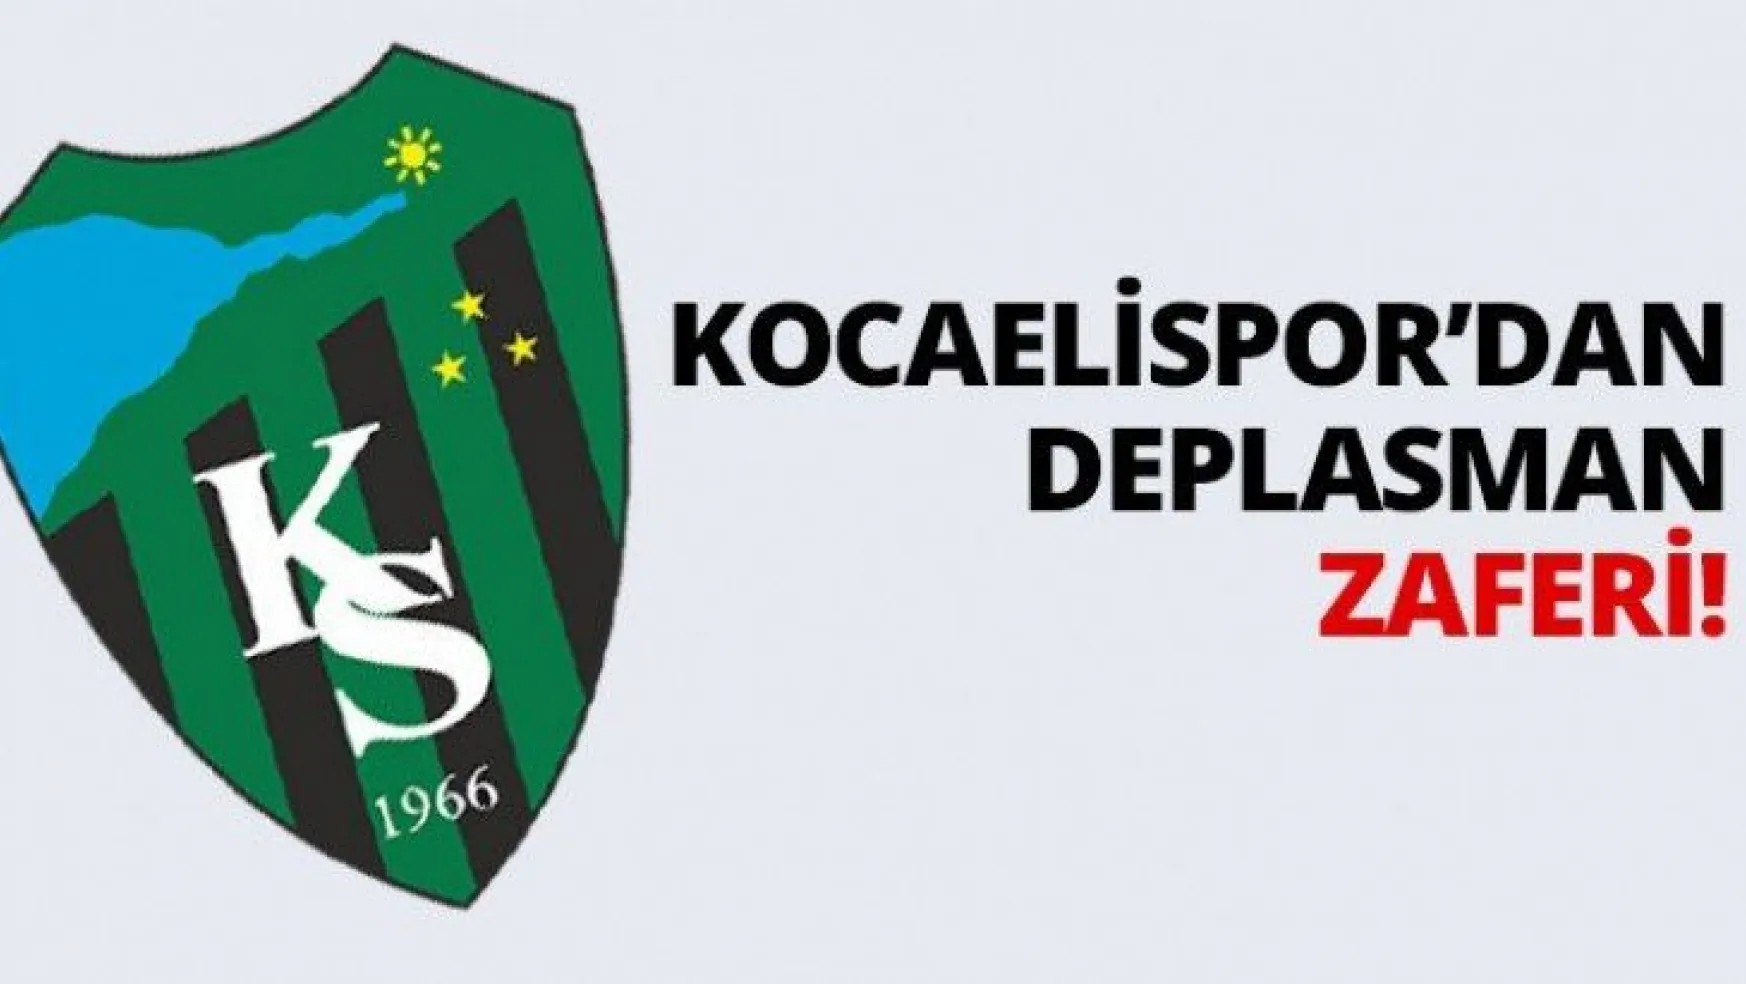 Kocaelispor'dan deplasman zaferi!